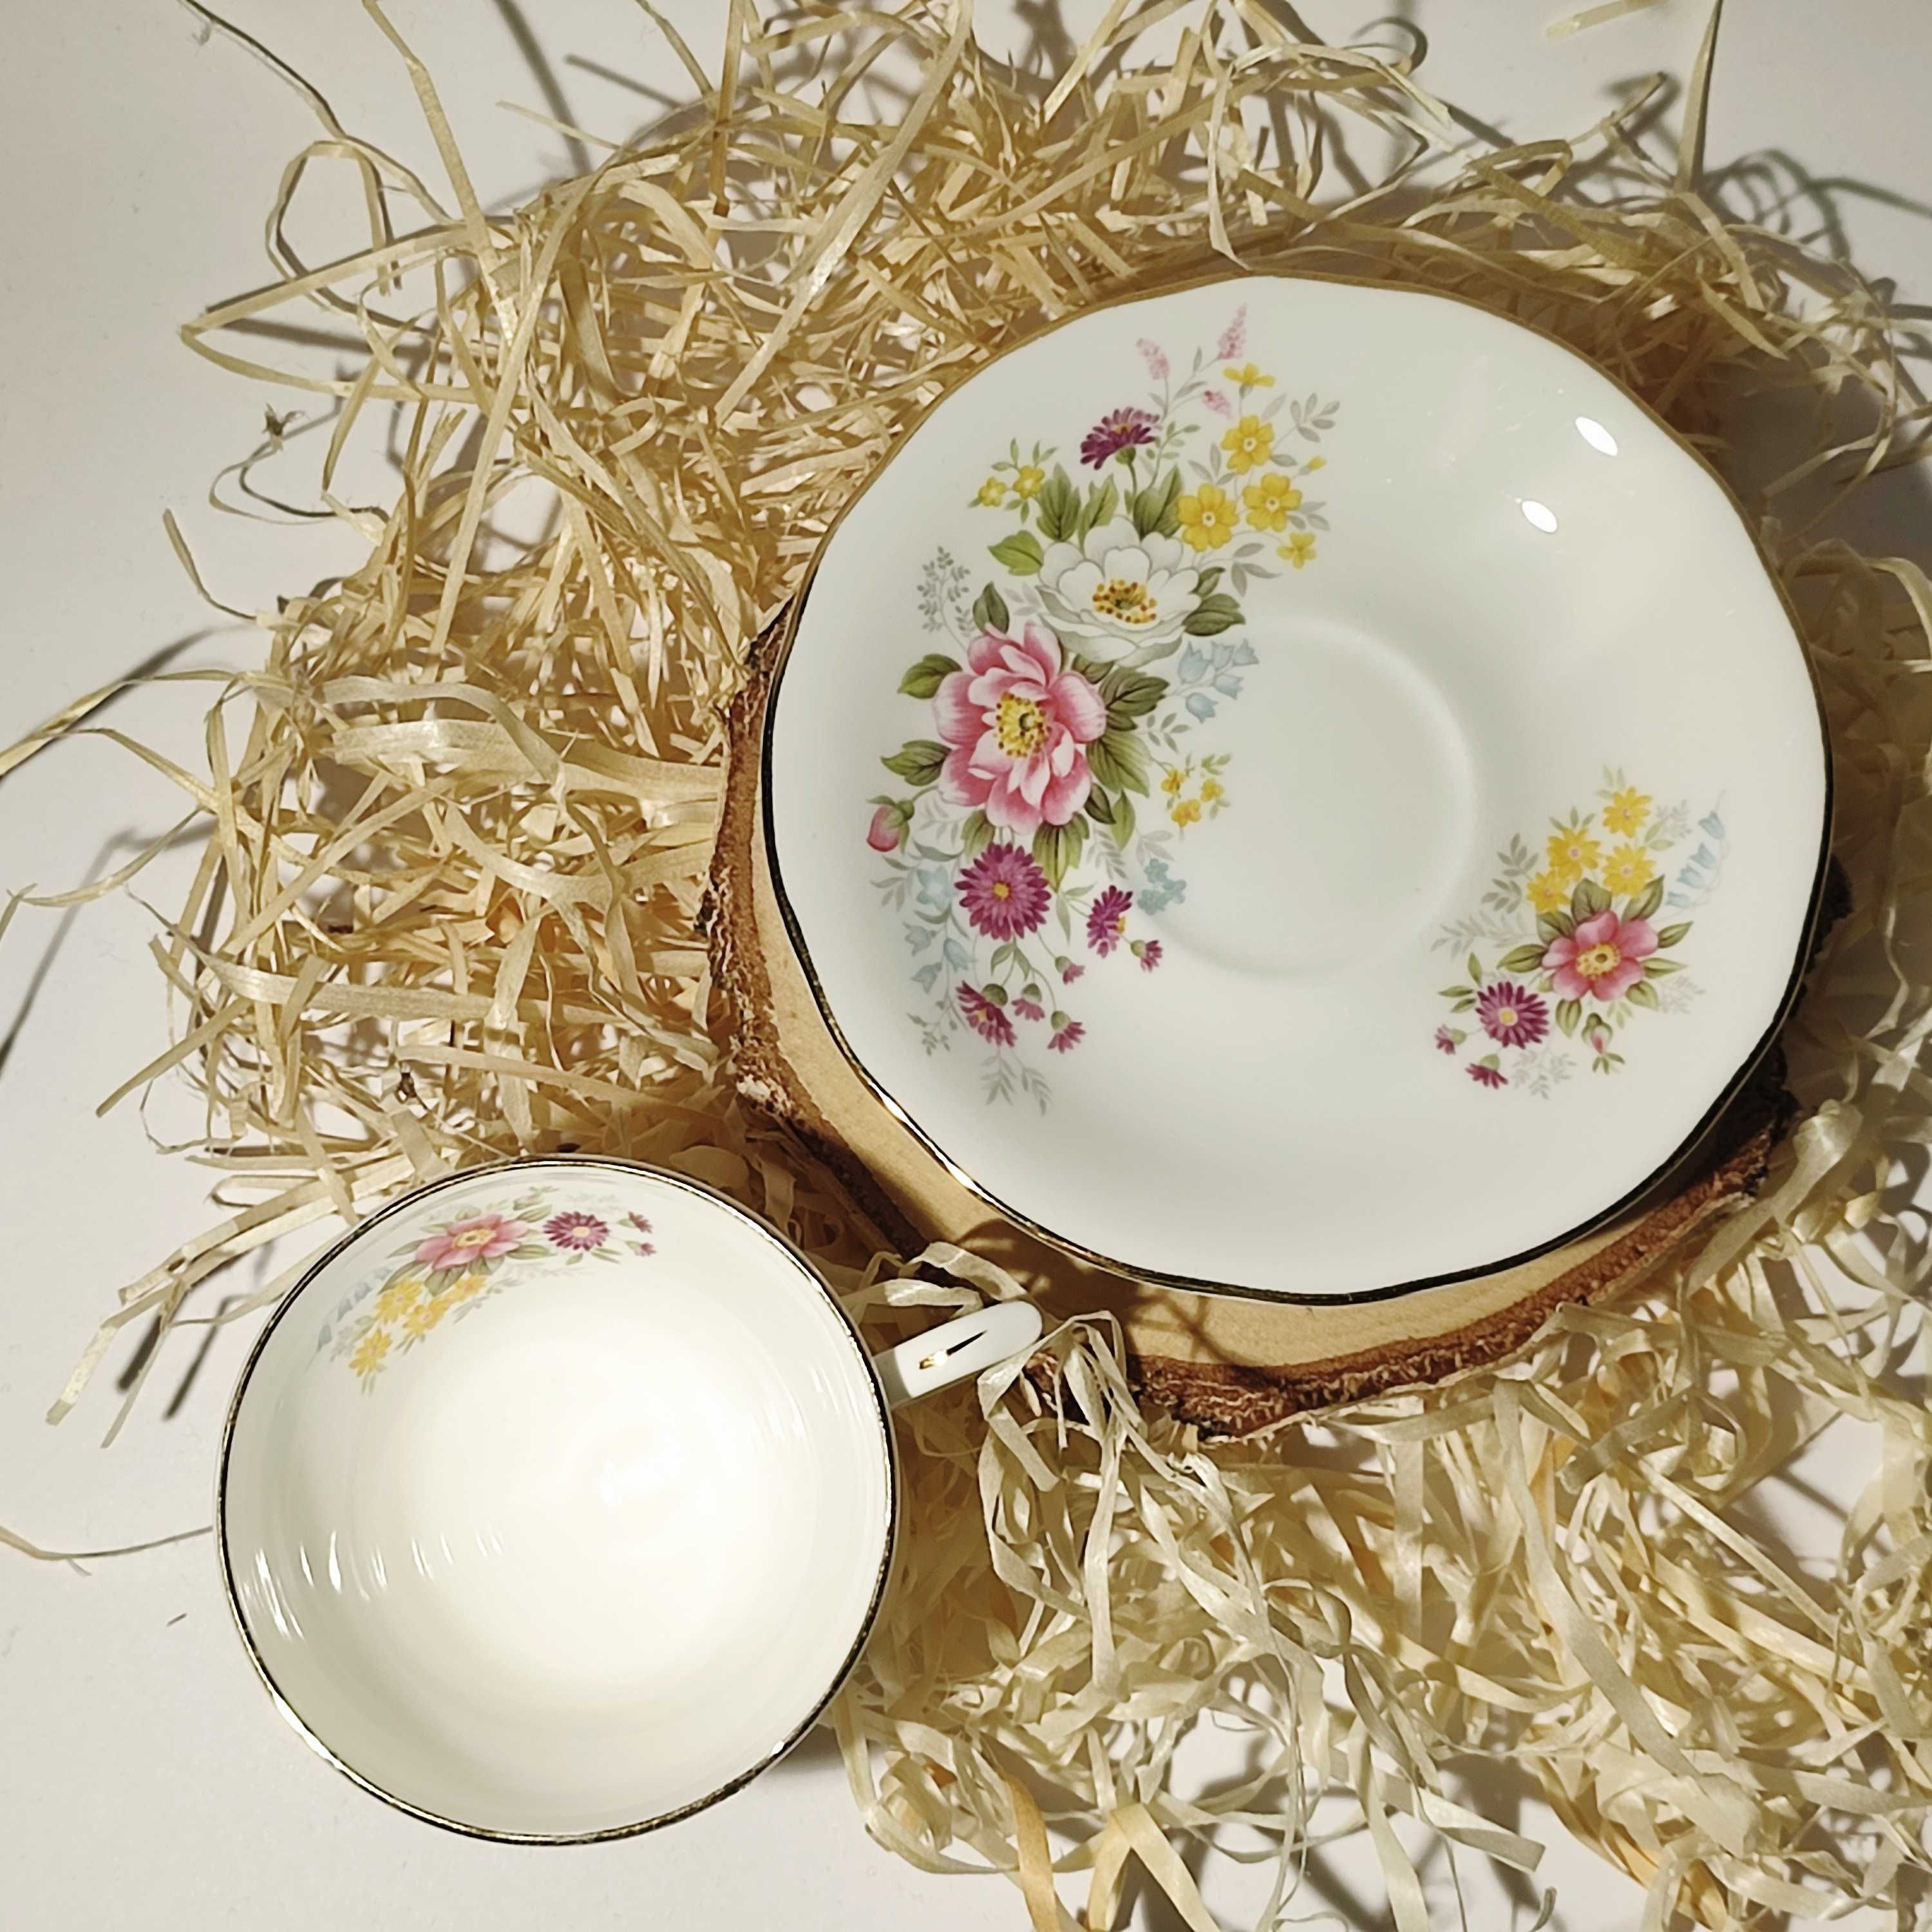 Duchess angielska porcelana filiżanka i spodek polne kwiaty